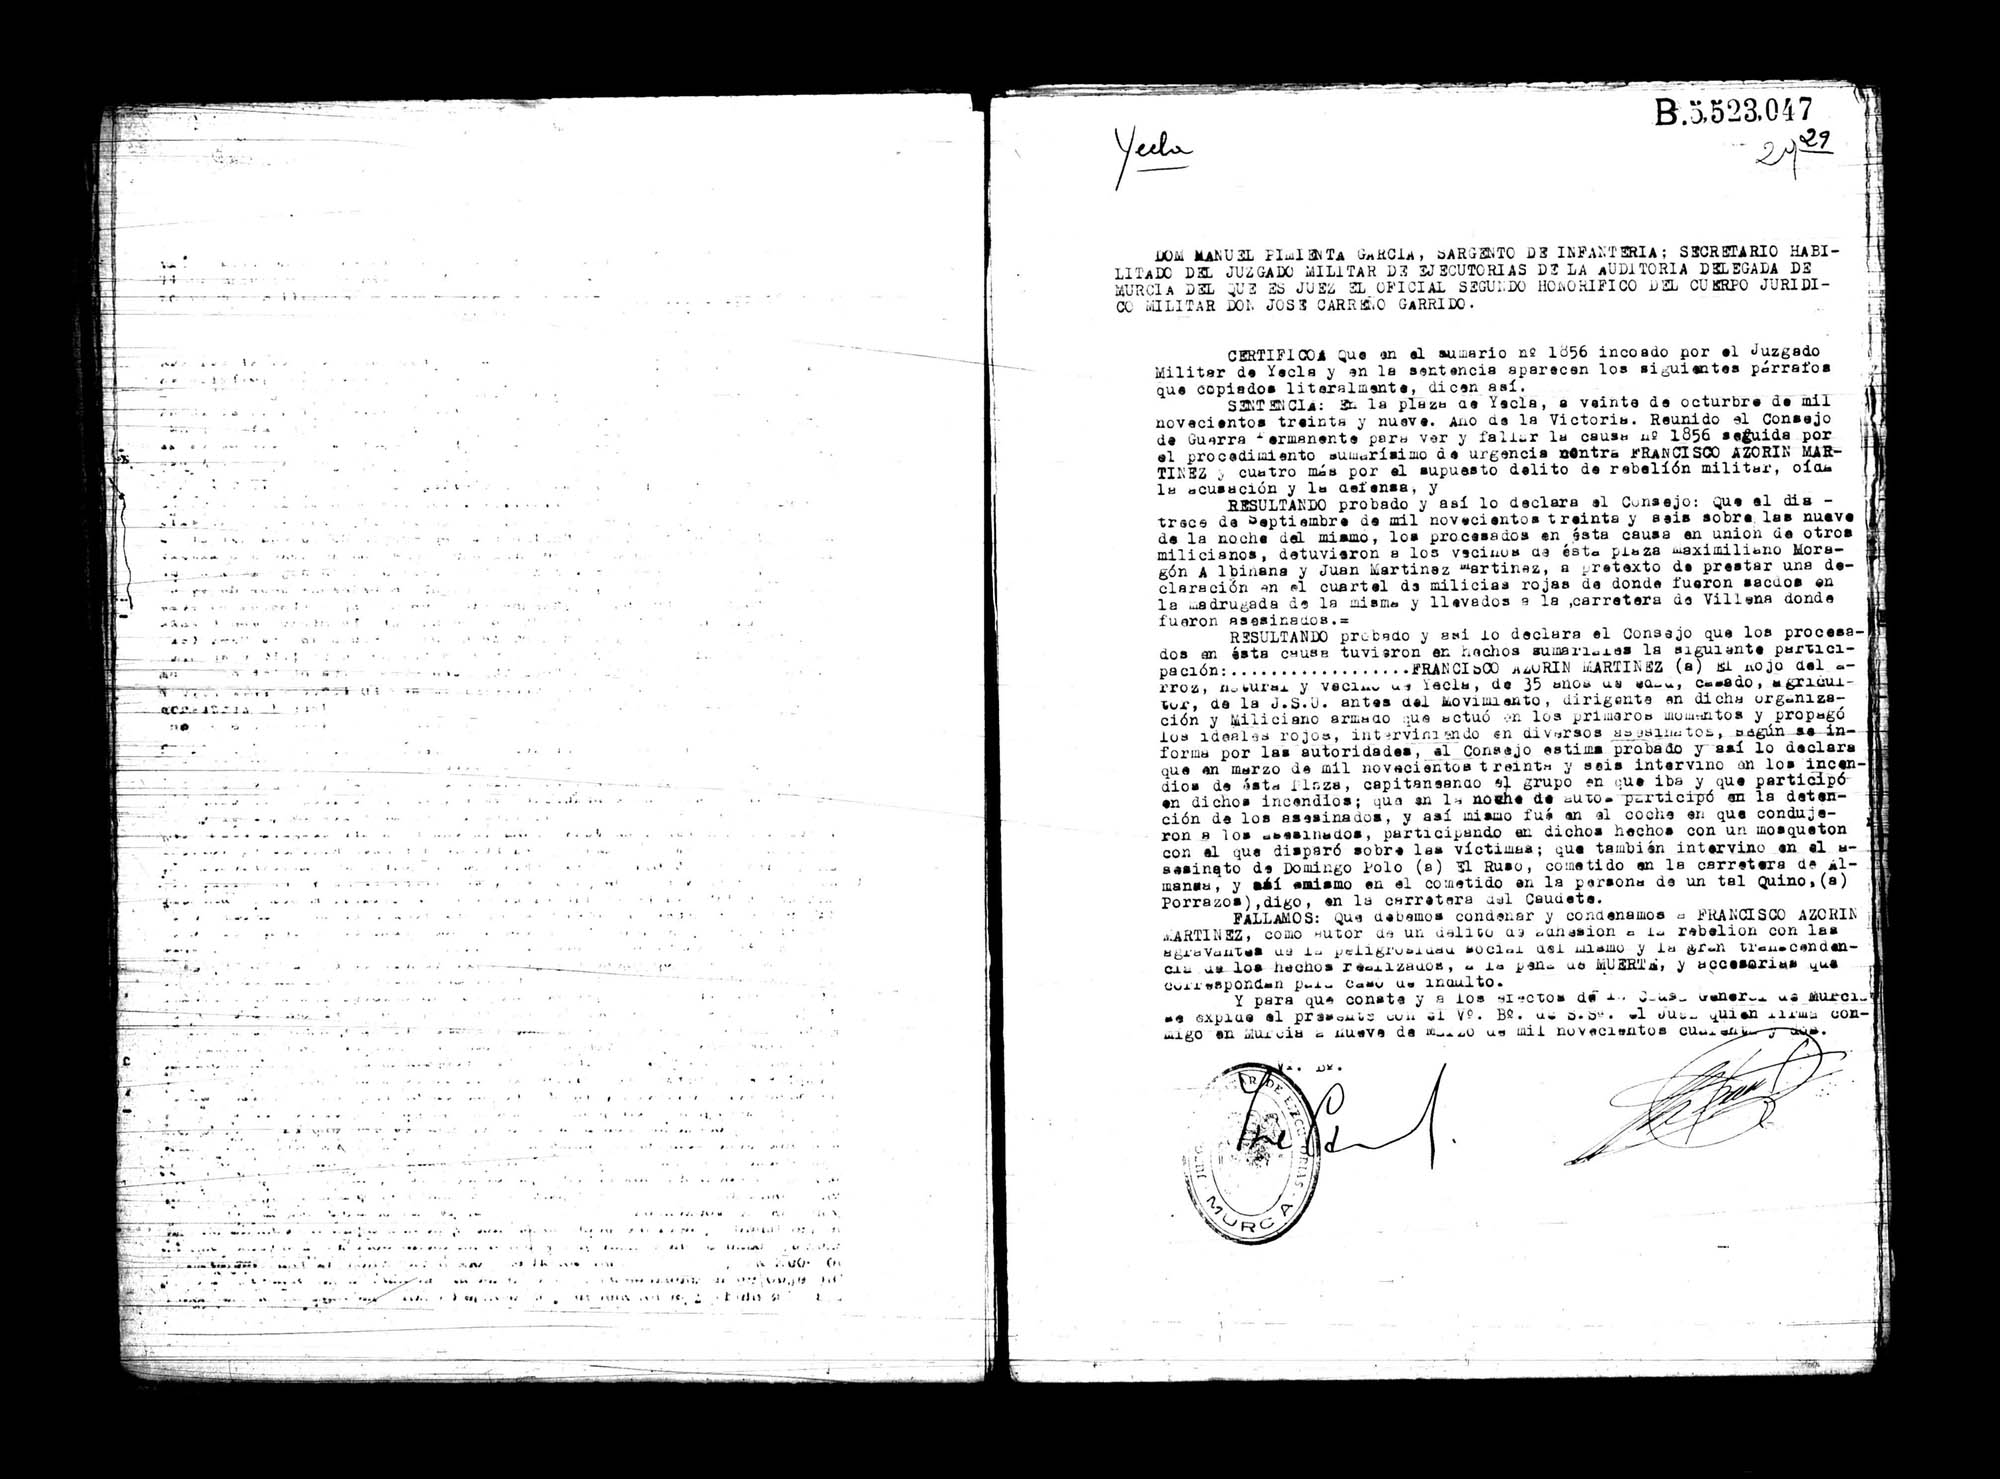 Certificado de la sentencia pronunciada contra Francisco Azorín Martínez, causa 1856, el 20 de octubre de 1939 en Yecla.